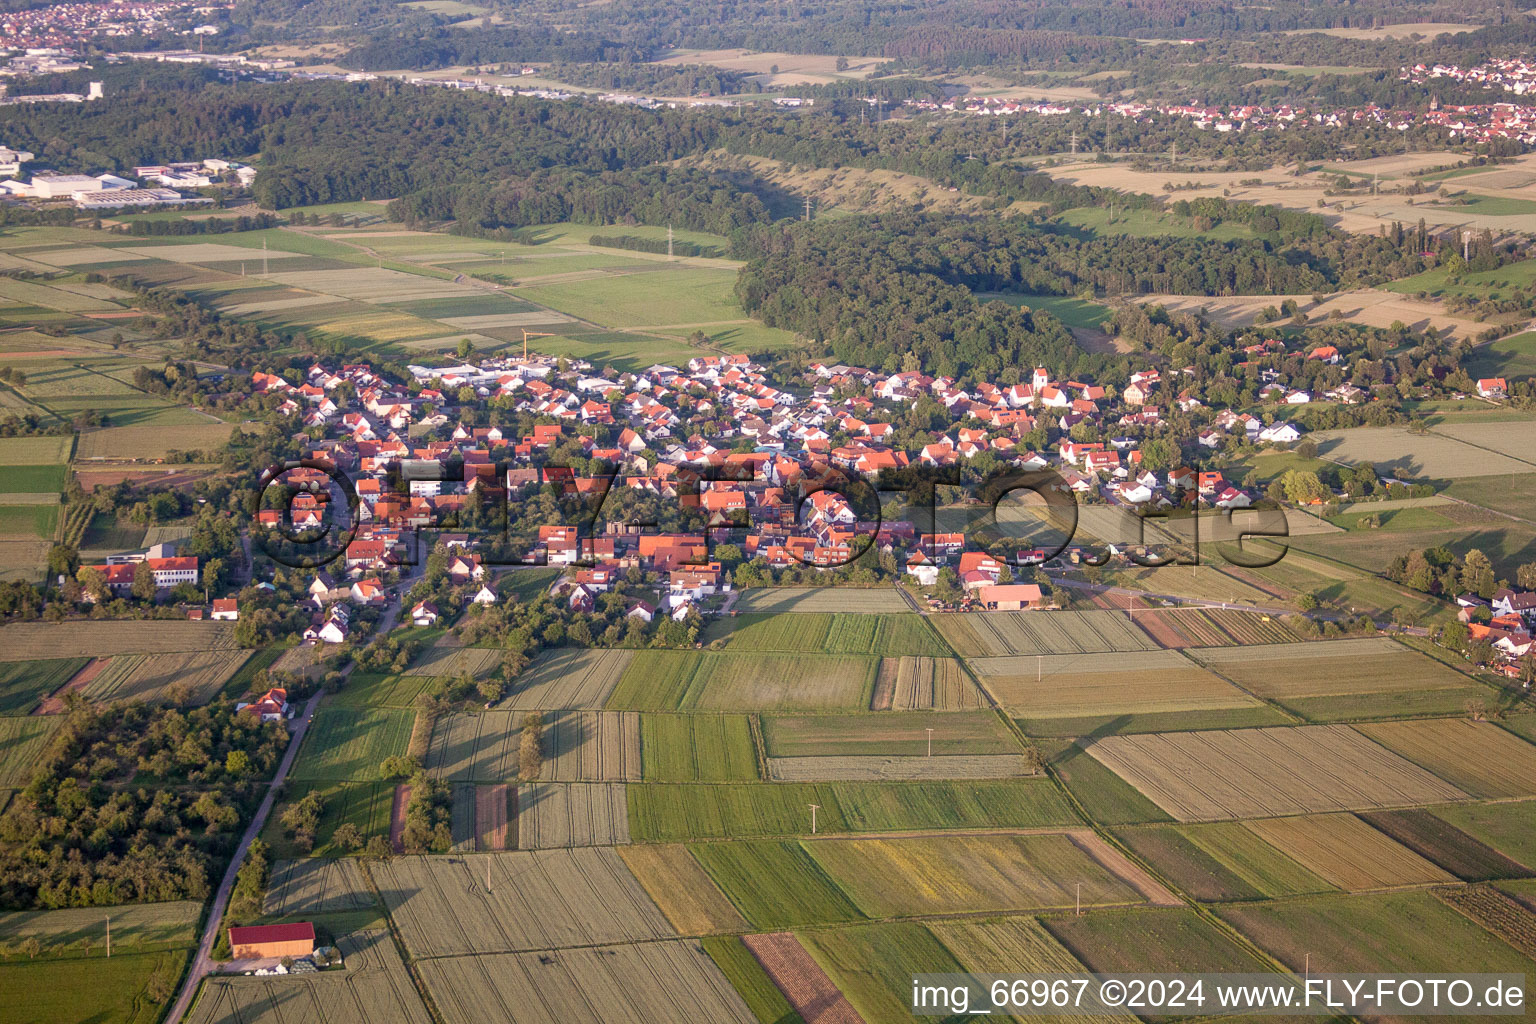 Vue aérienne de Champs agricoles et surfaces utilisables à Mähringen dans le département Bade-Wurtemberg, Allemagne